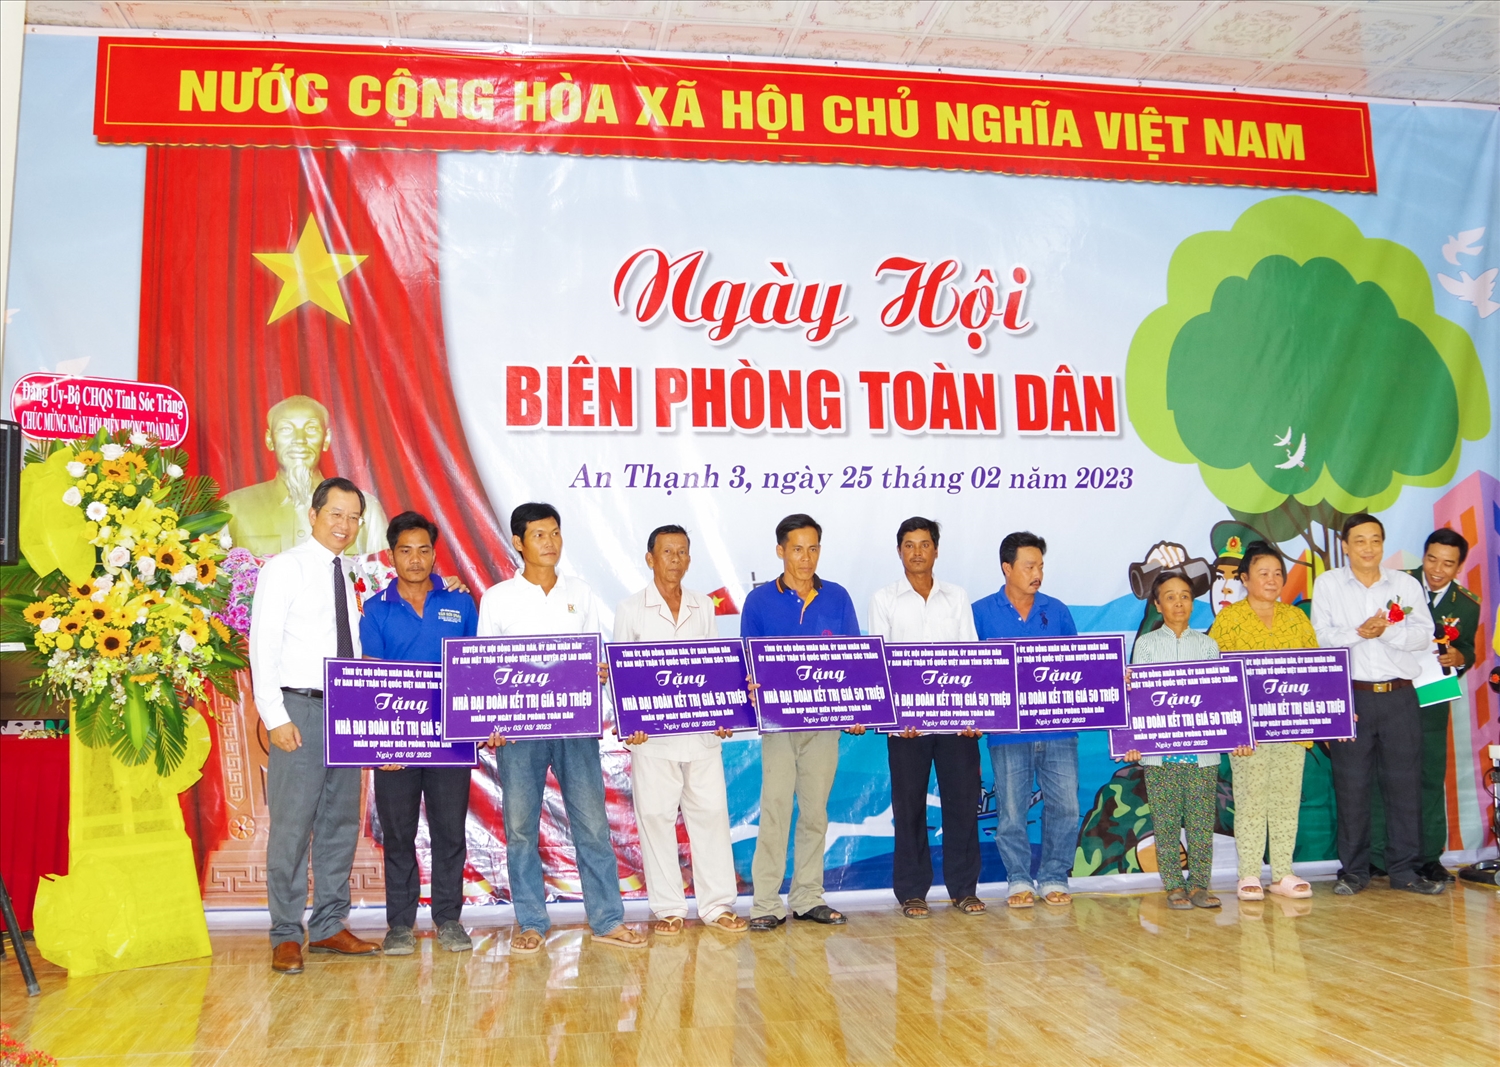 Ông Vương Quốc Nam – Phó Chủ tịch UBND tỉnh (đứng thứ nhất từ trái qua ) và ông Lâm Dũng Liêm – Phó Chủ tịch UBMTTQ Việt Nam tỉnh Sóc Trăng (đứng đầu tiên bên phải) trao bảng tượng trưng tặng nhà “Đại đoàn kết”